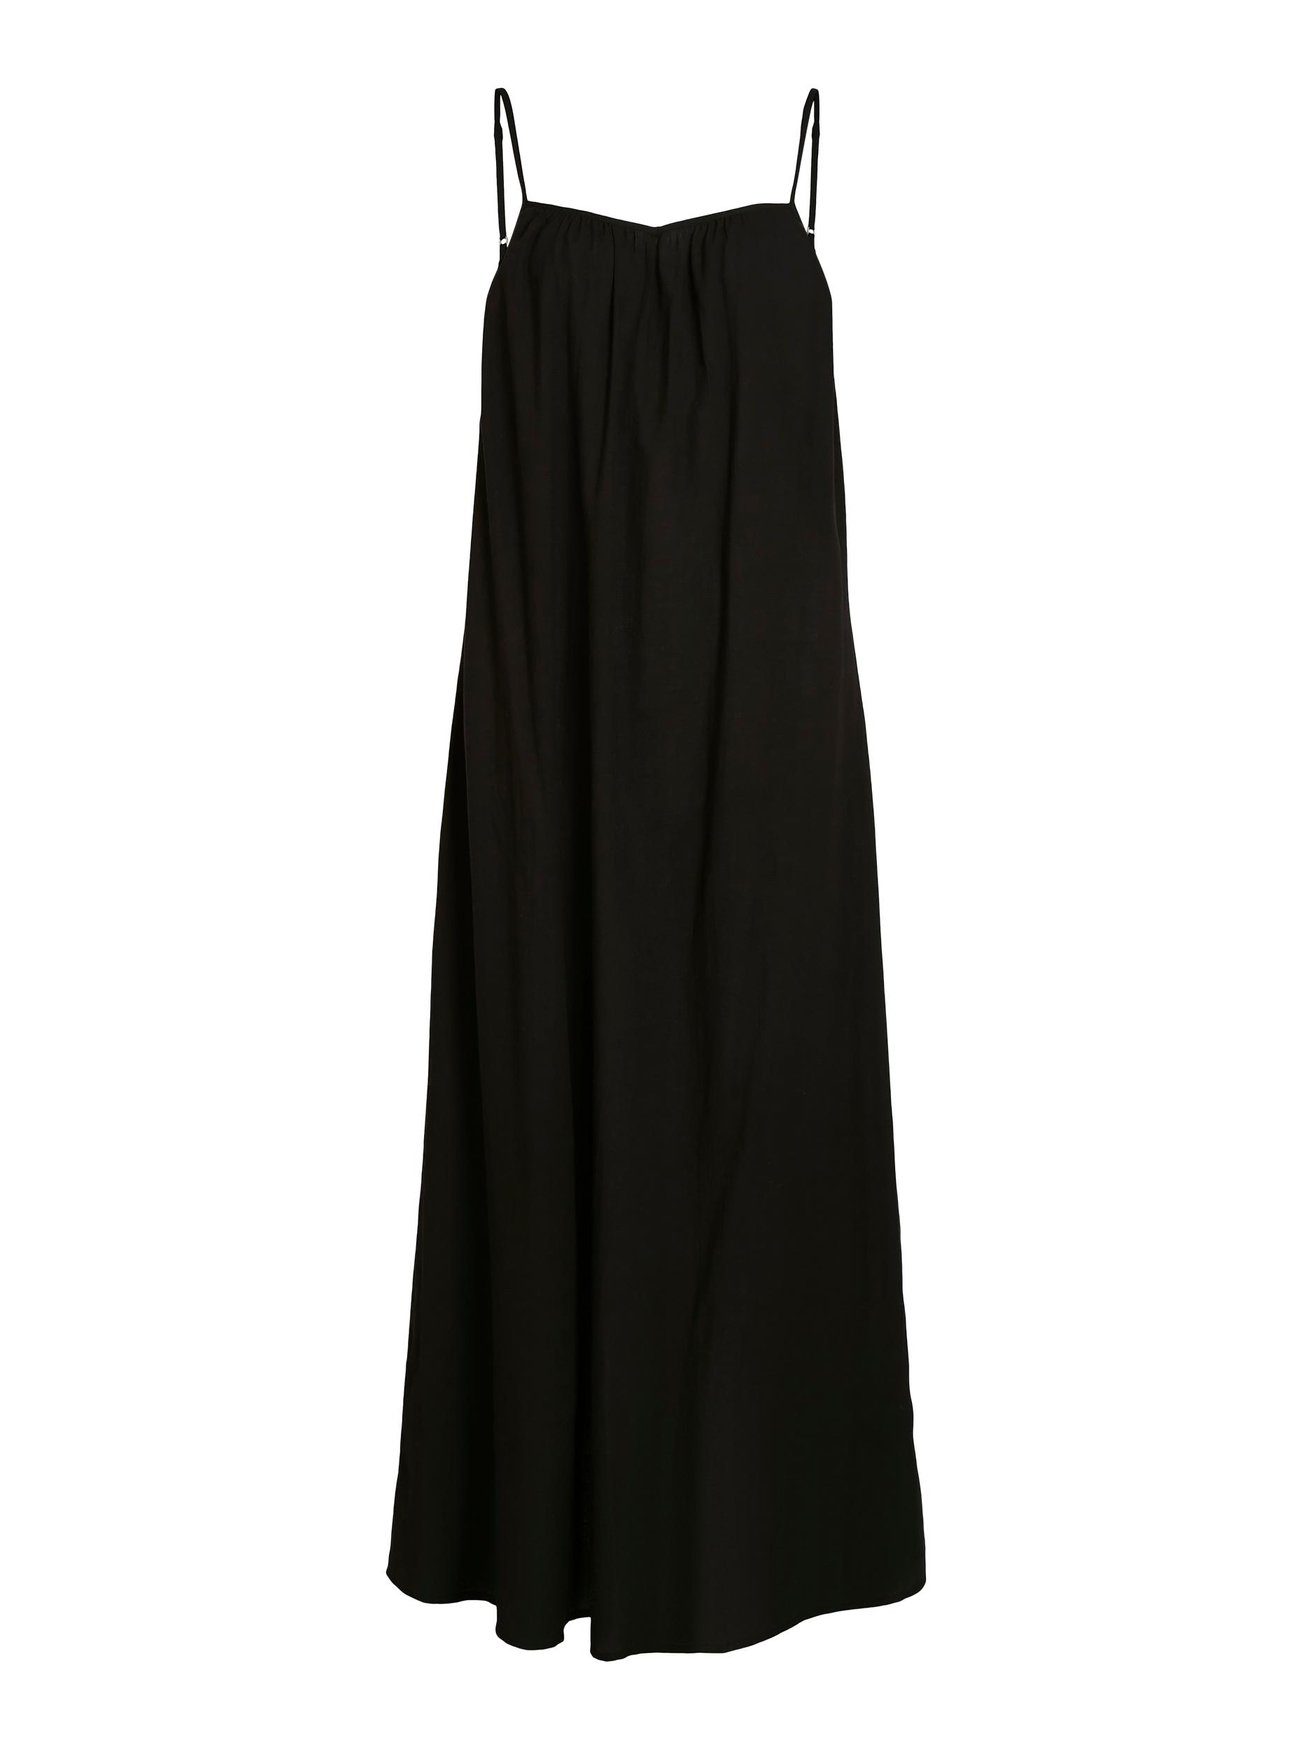 Kleid Maxi 5737 Dress Shirtkleid Spaghetti (lang) Träger mit Vila Schwarz Rückenausschnitt VIANIKA in